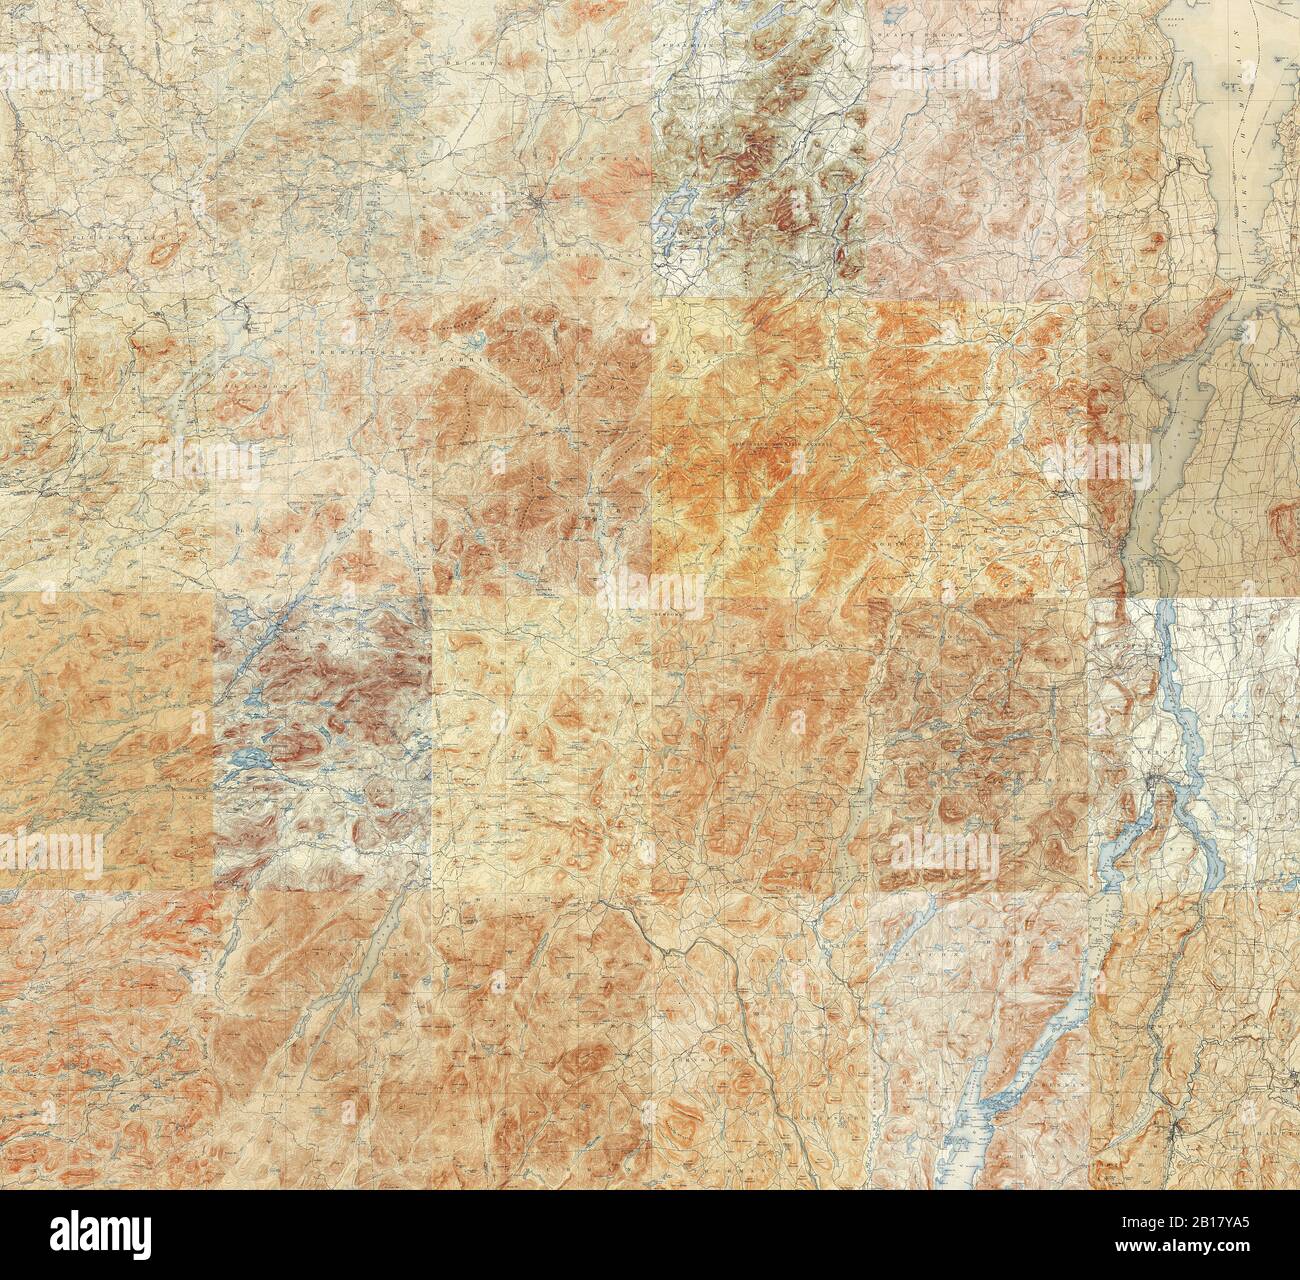 Mapa topográfico de las Adirondacks - compilación de 24 cuadrángulos individuales de 15 minutos en el Adirondack Park Foto de stock